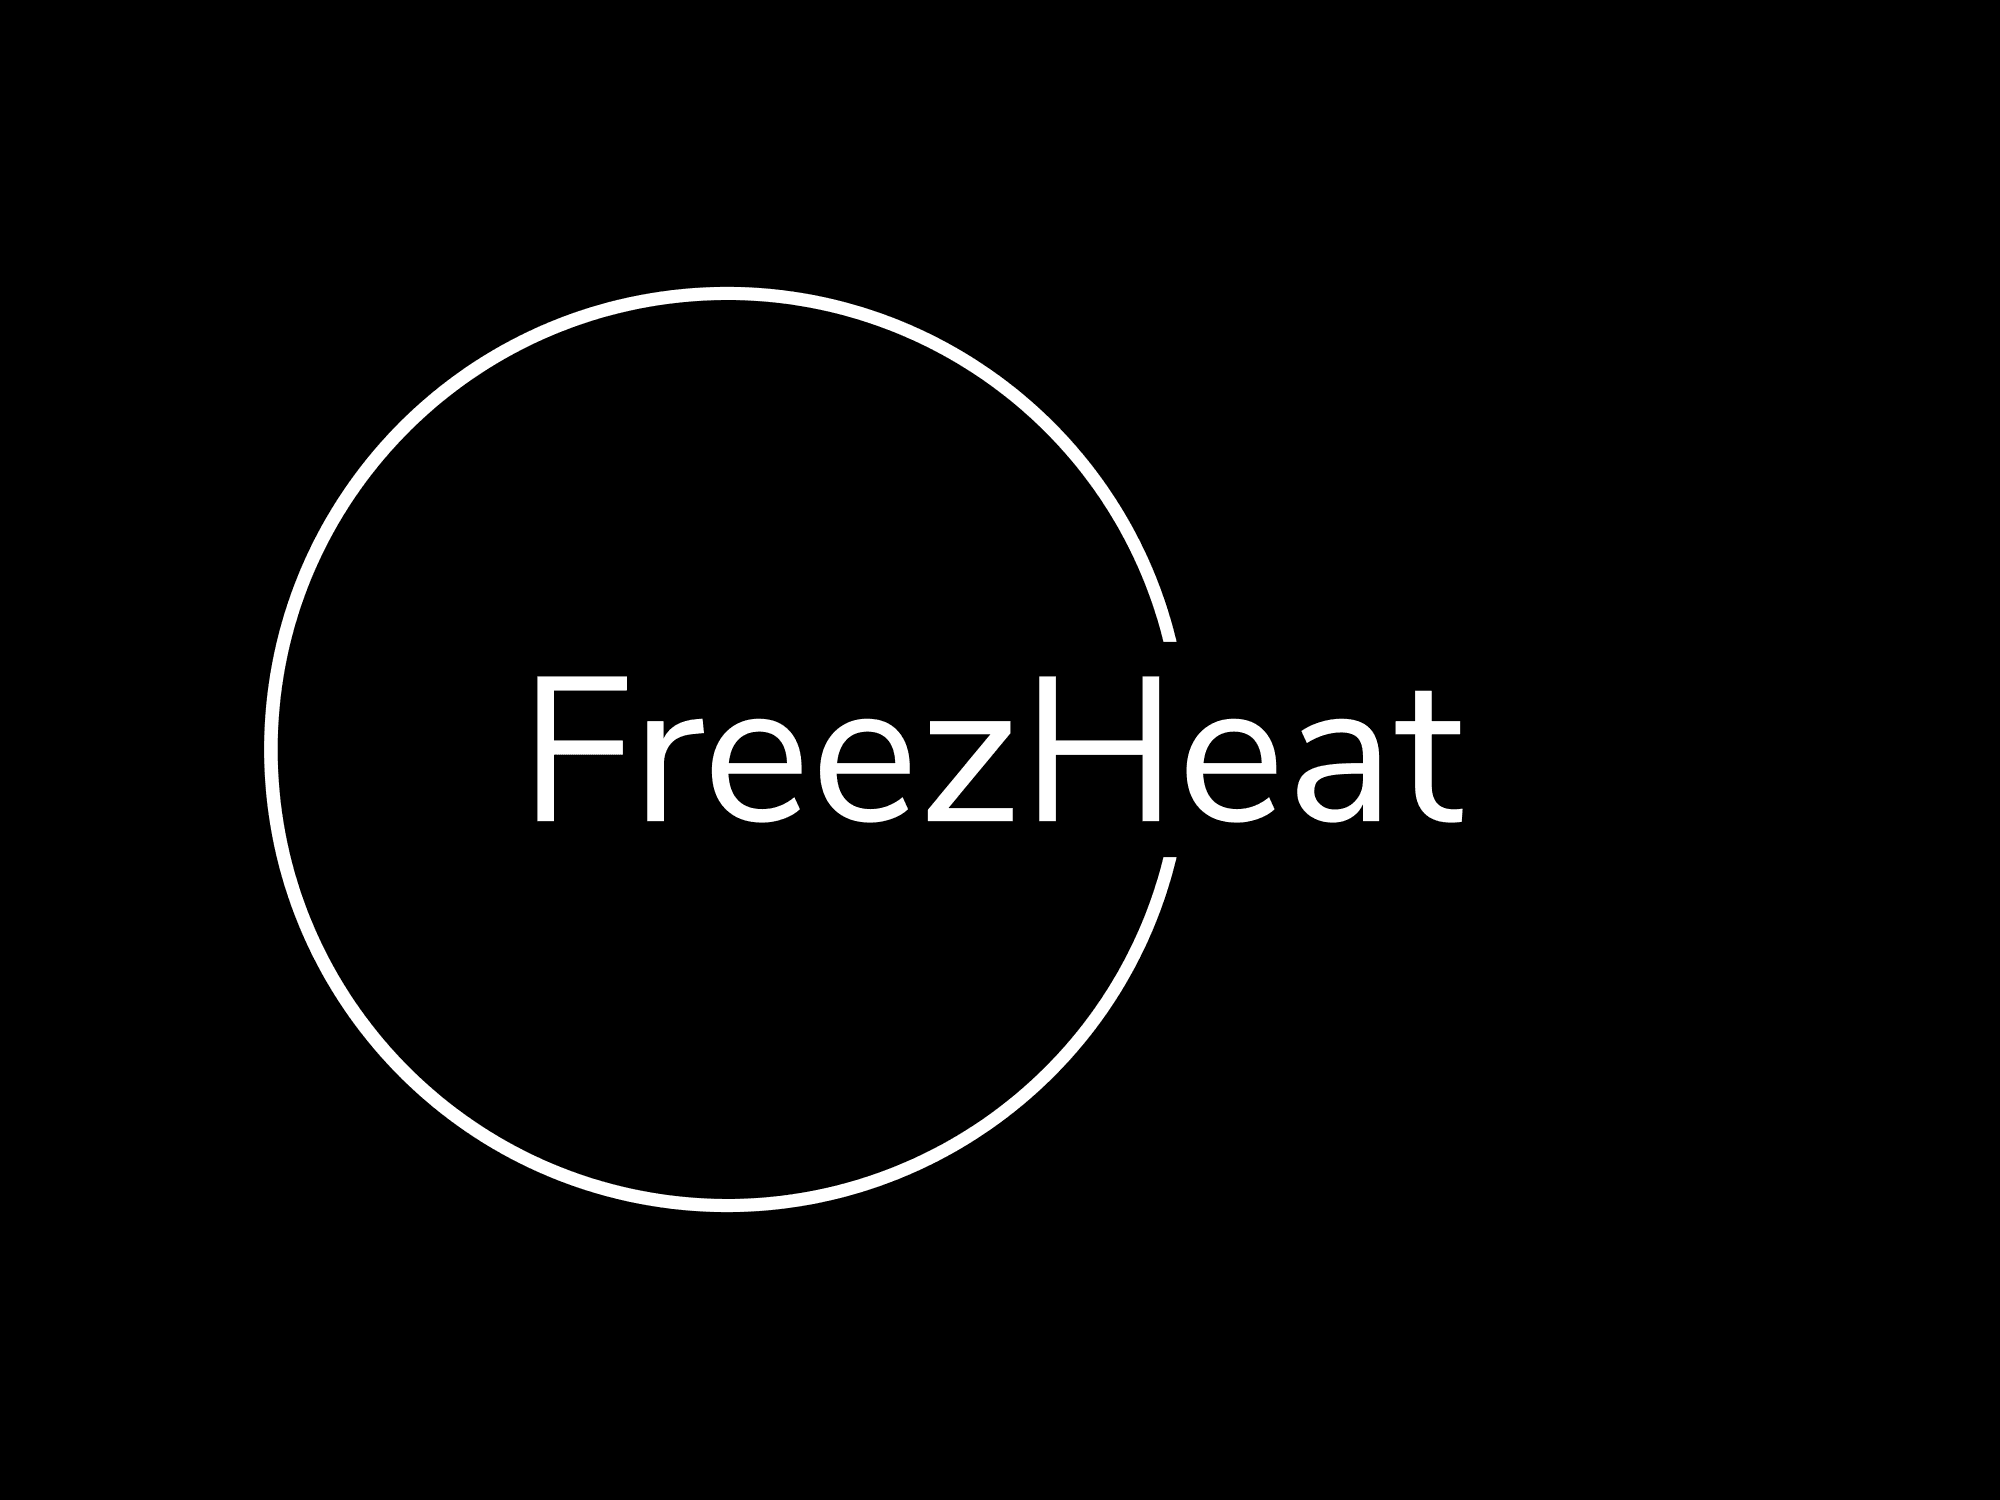 FreezHeat 橫幅